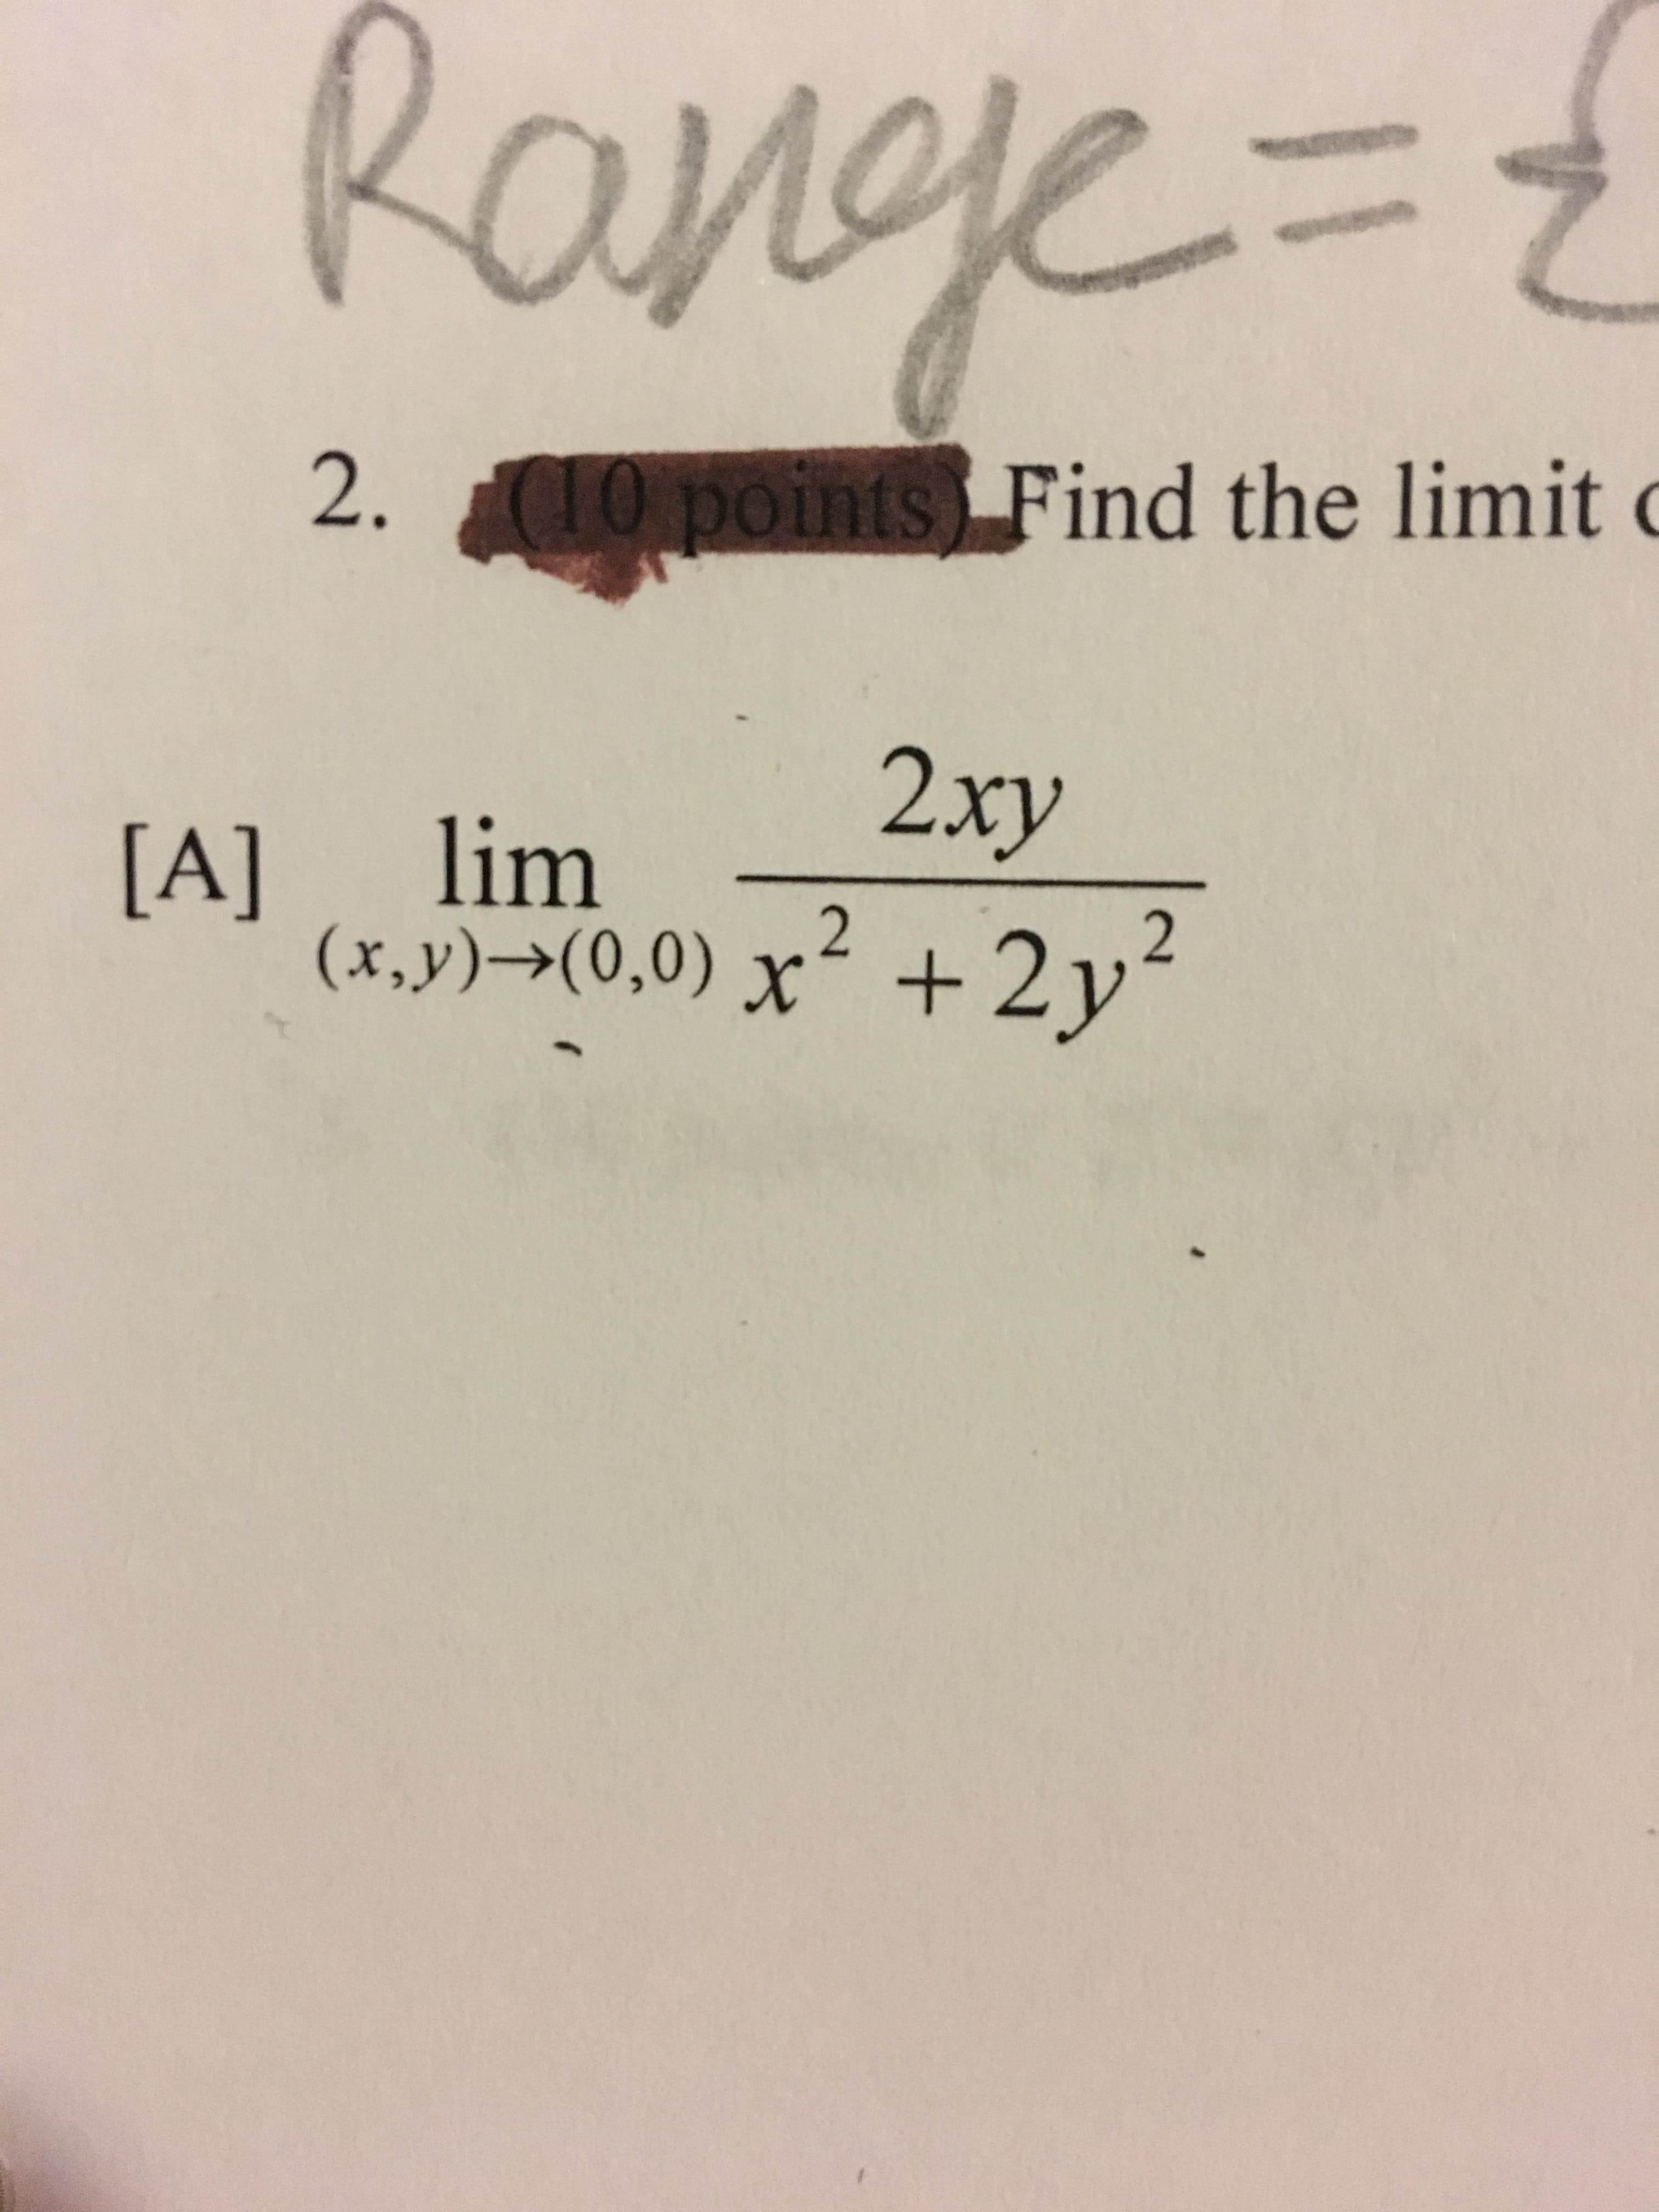 Range=
2.
10 points Find the limit
2xy
lim
[A]
2
2
(x,y)->(0,0) x+2y
